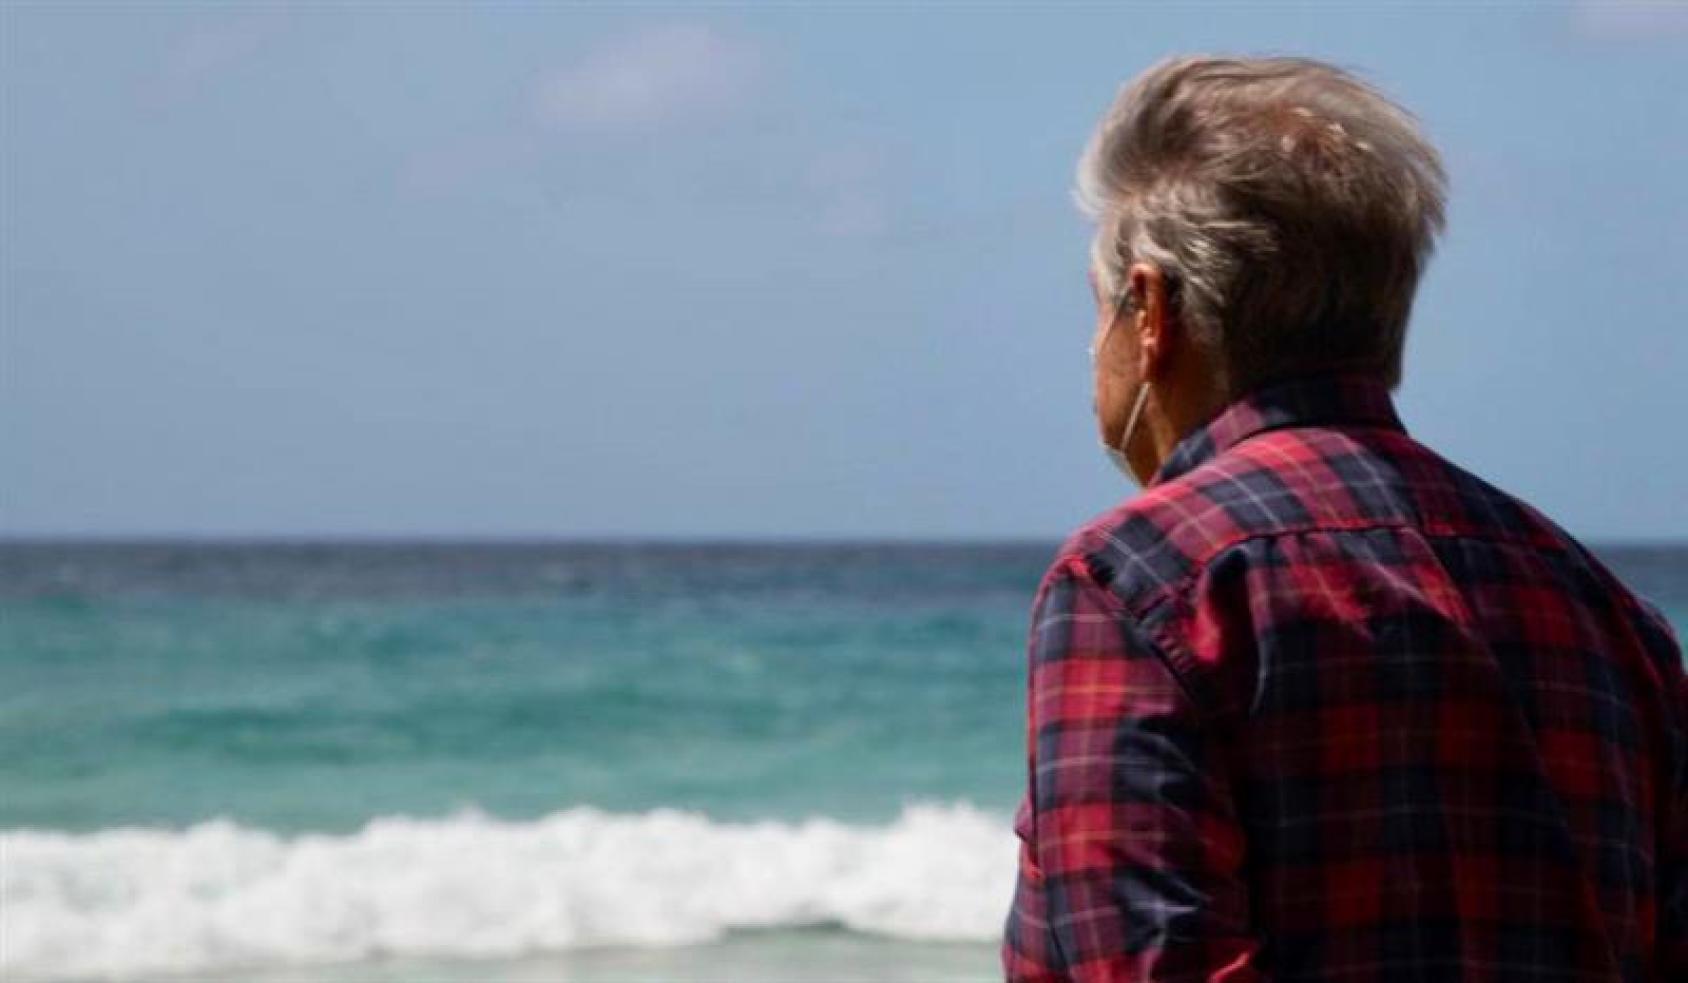 Le Secrétaire général des Nations Unies est photographié de dos en train de regarder l'océan depuis une plage.